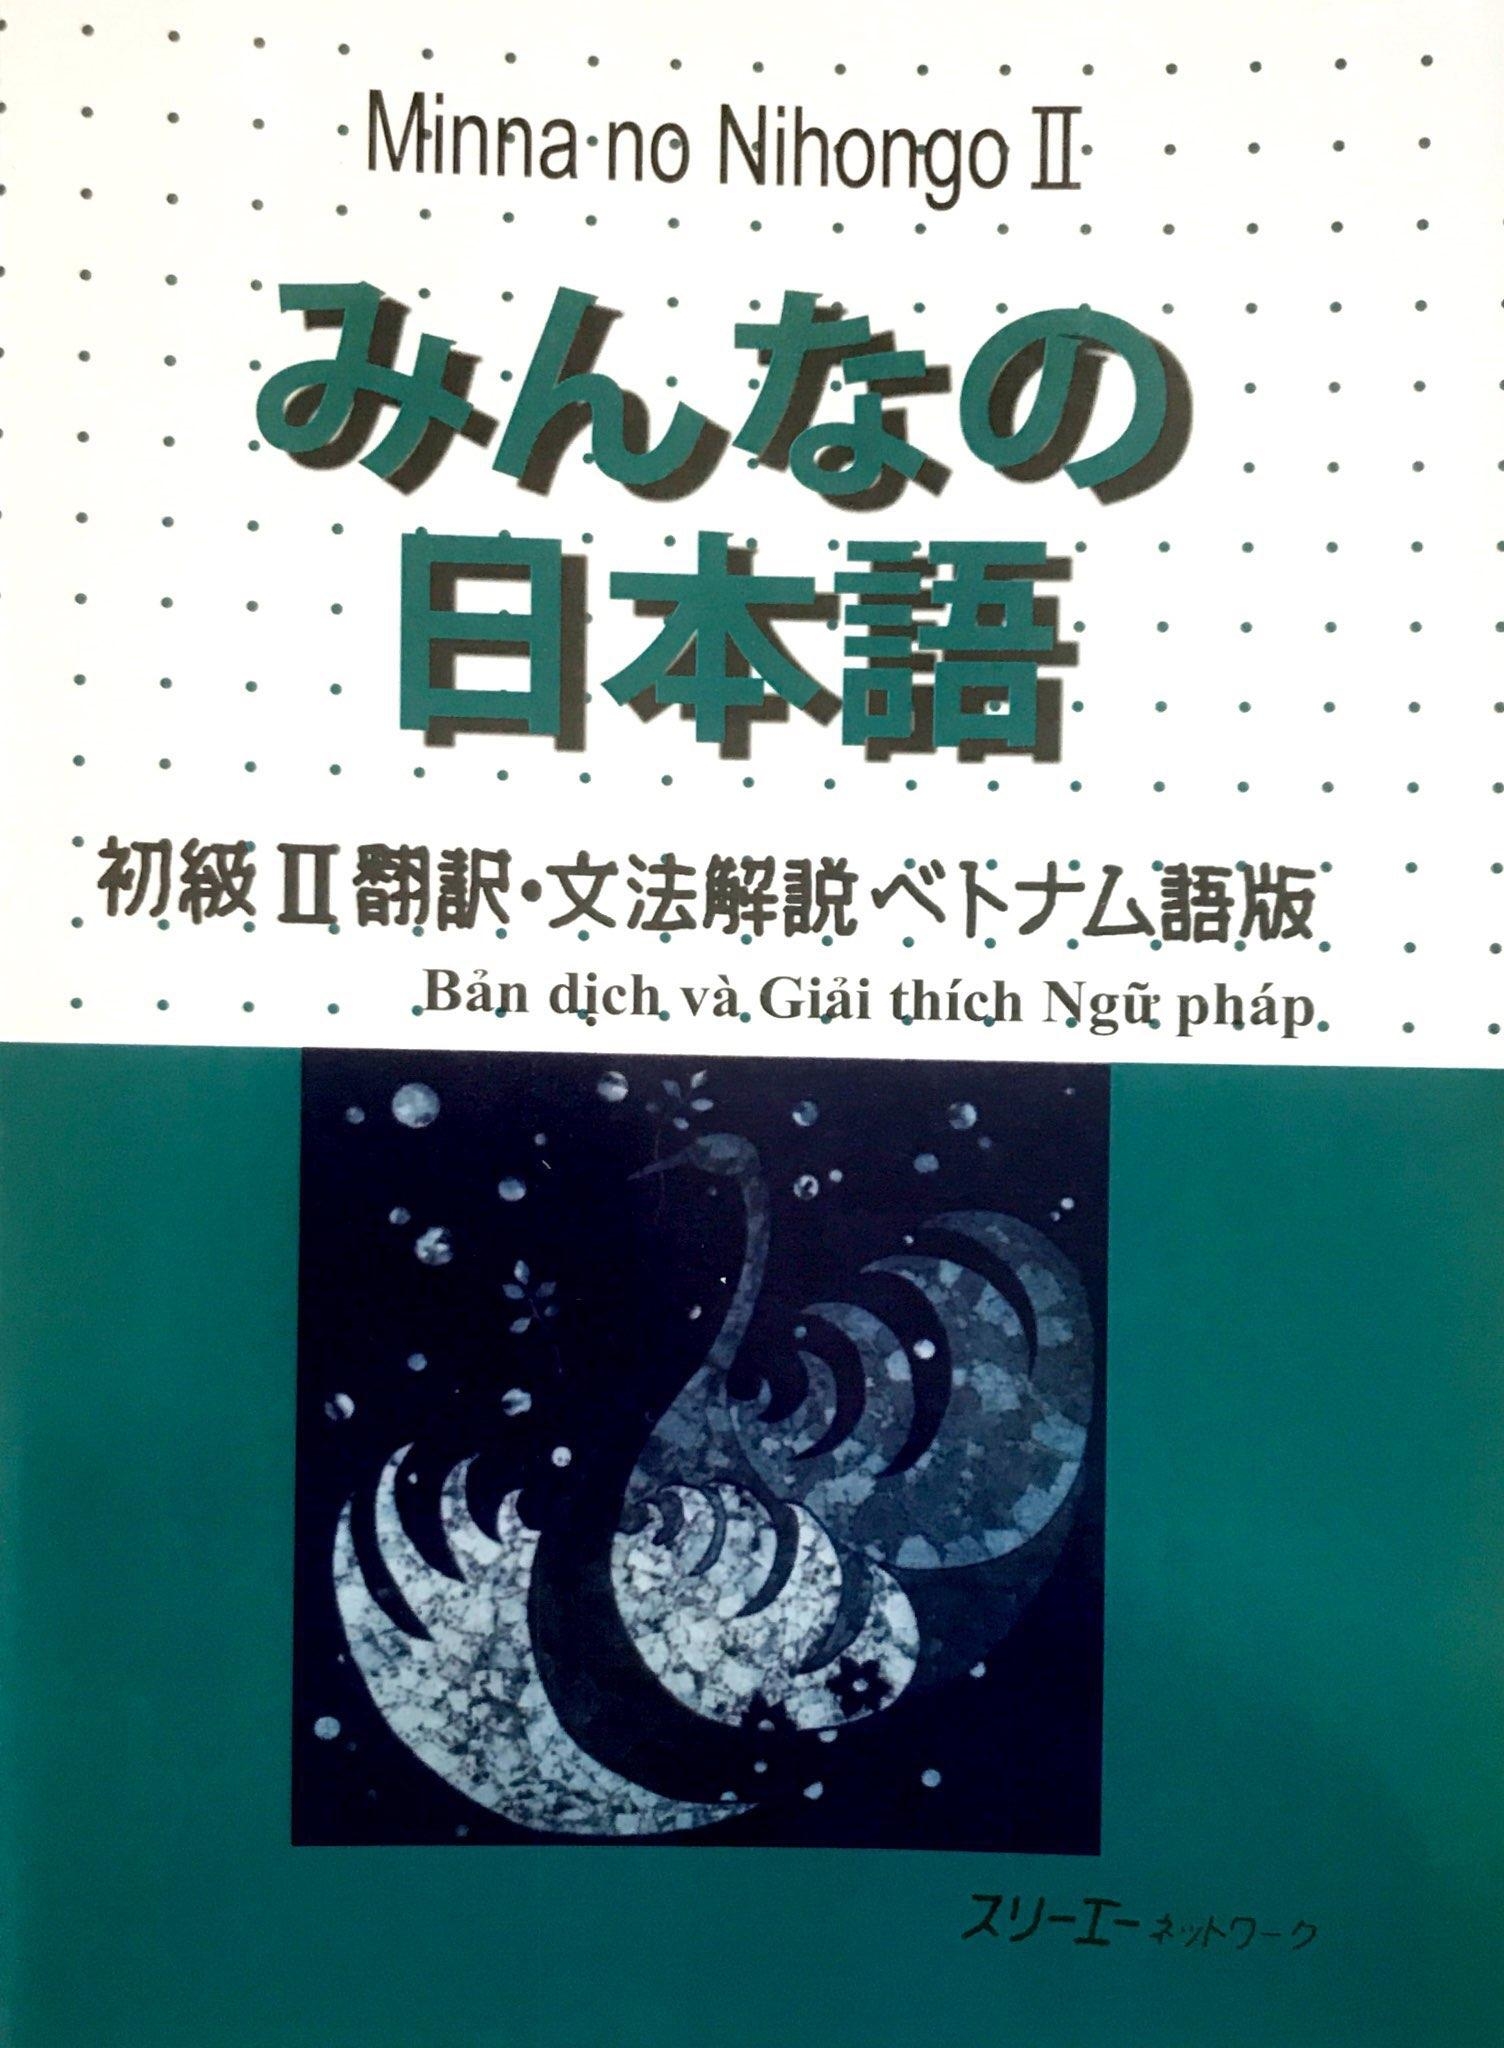 Giáo trình ngữ pháp Minna no Nihongo N4